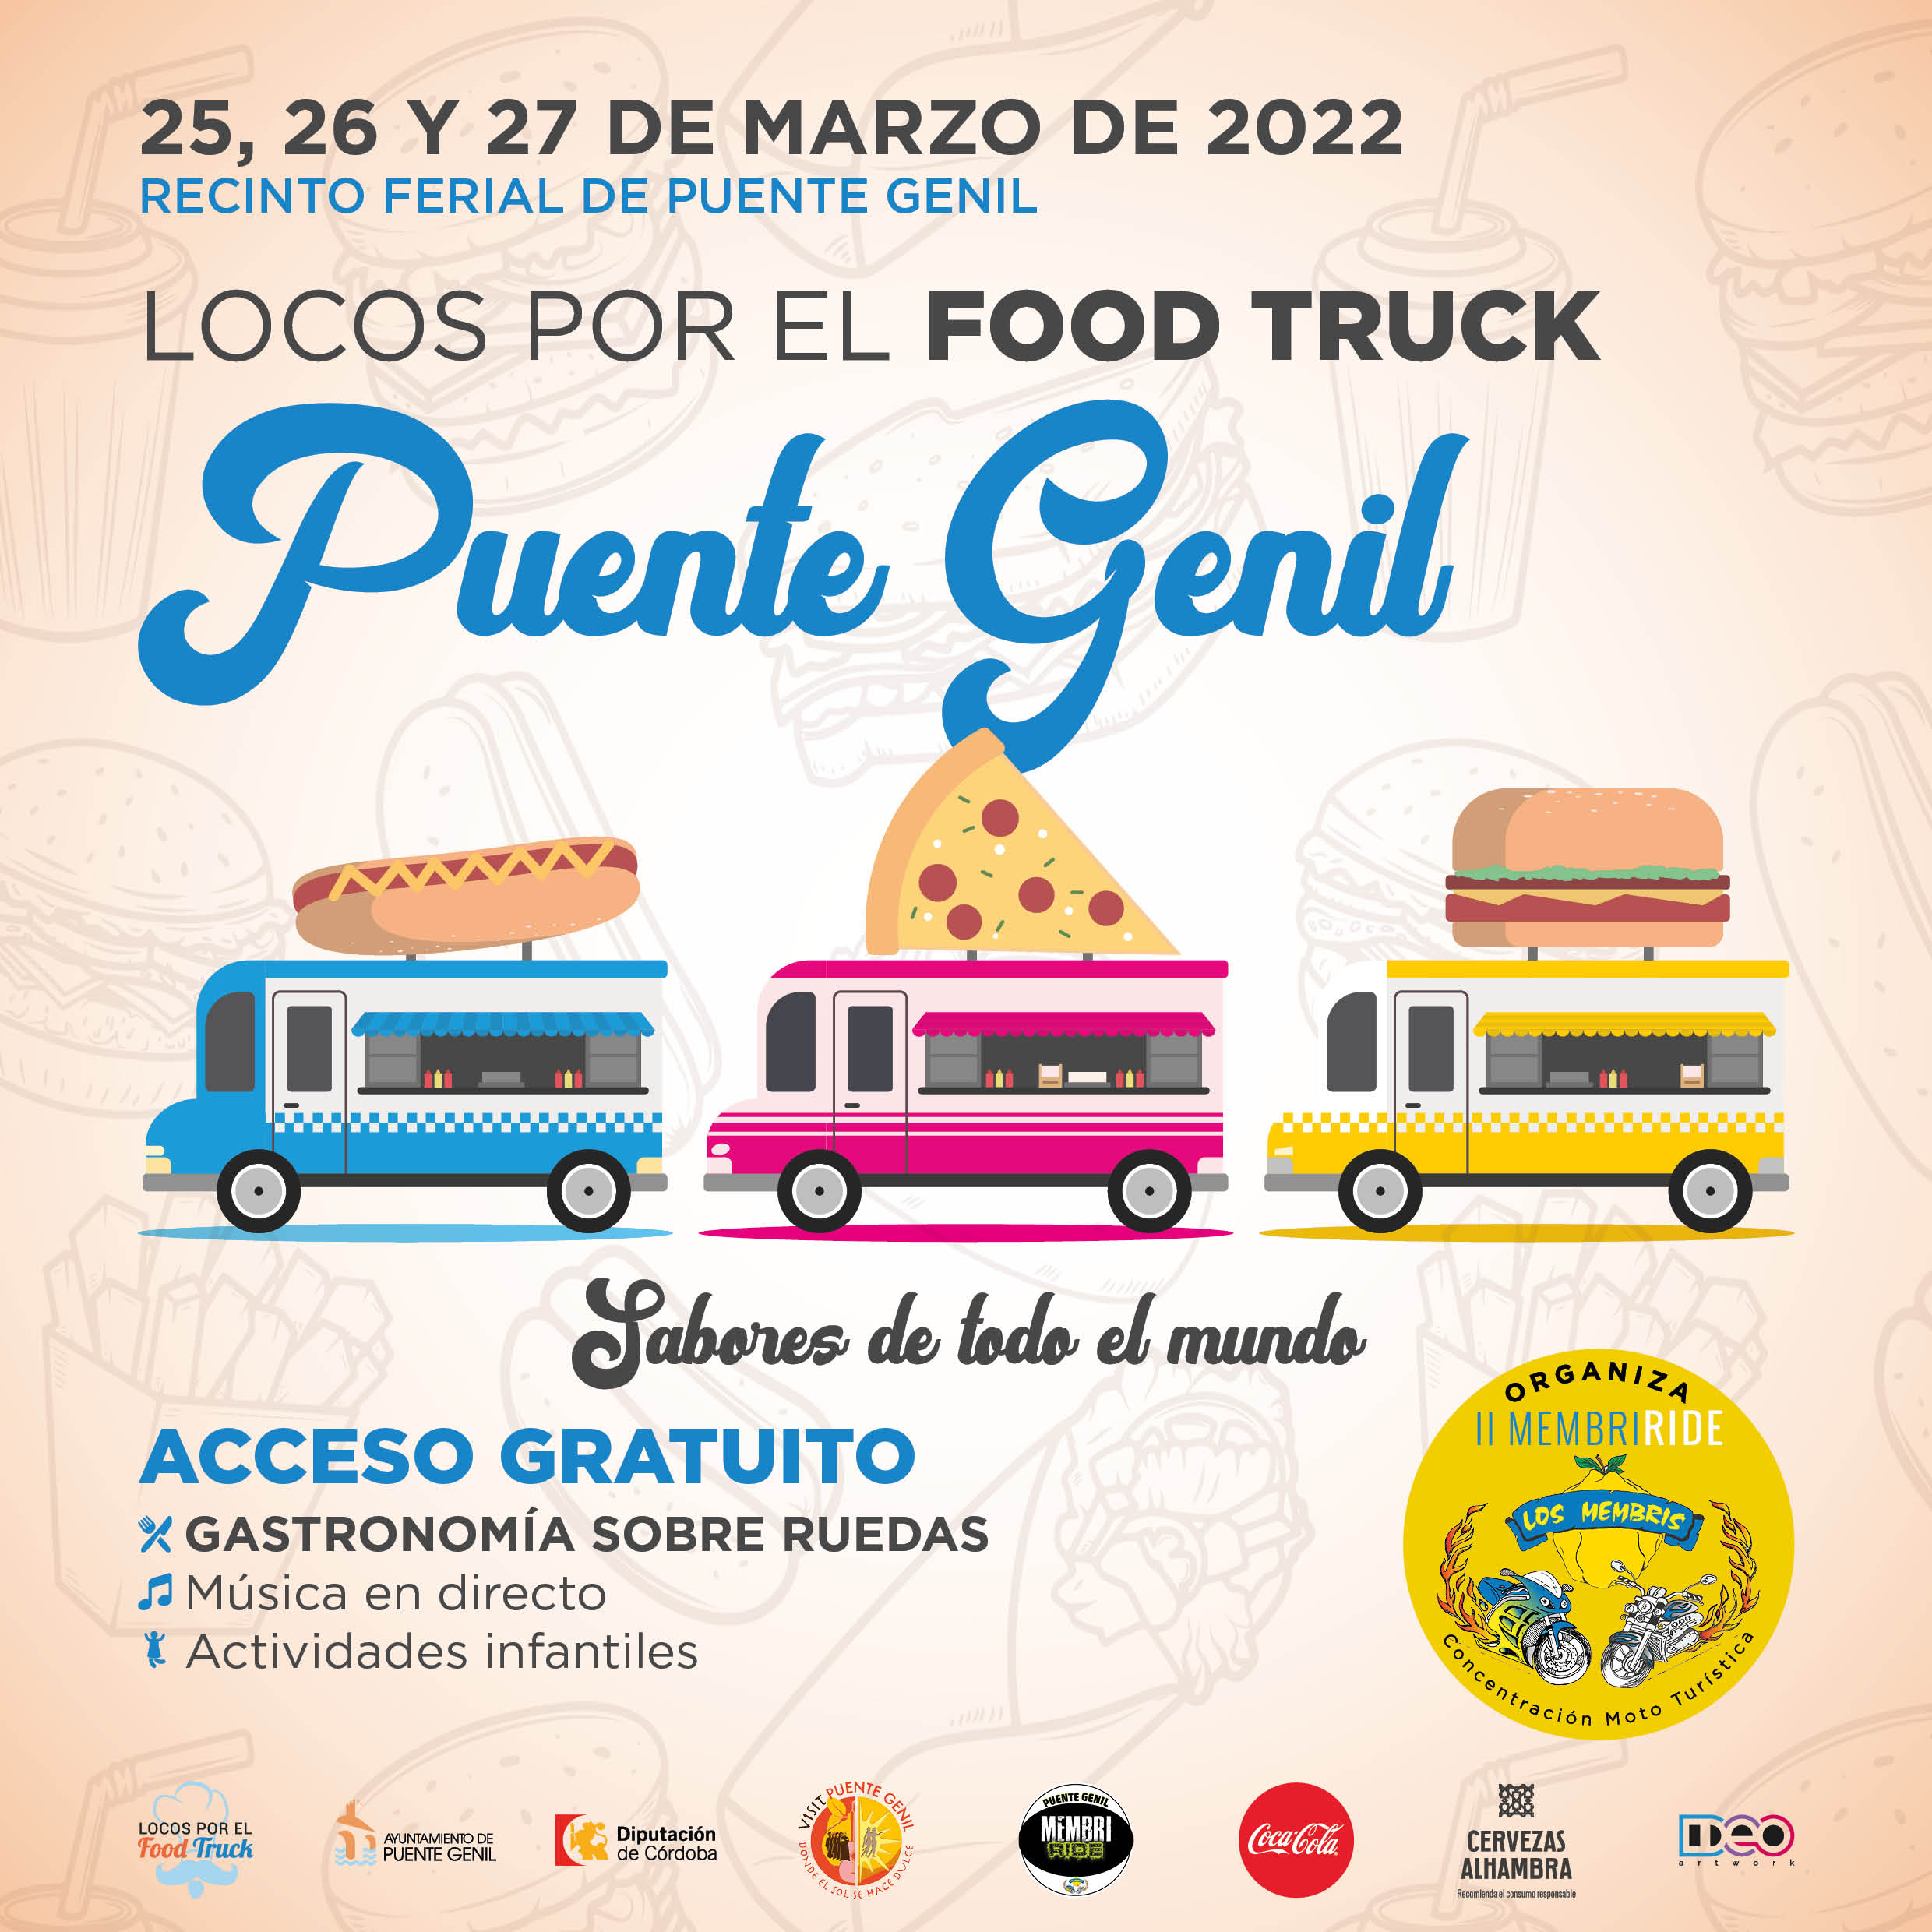 Locos por el Food Truck Puente Genil 2022 insta